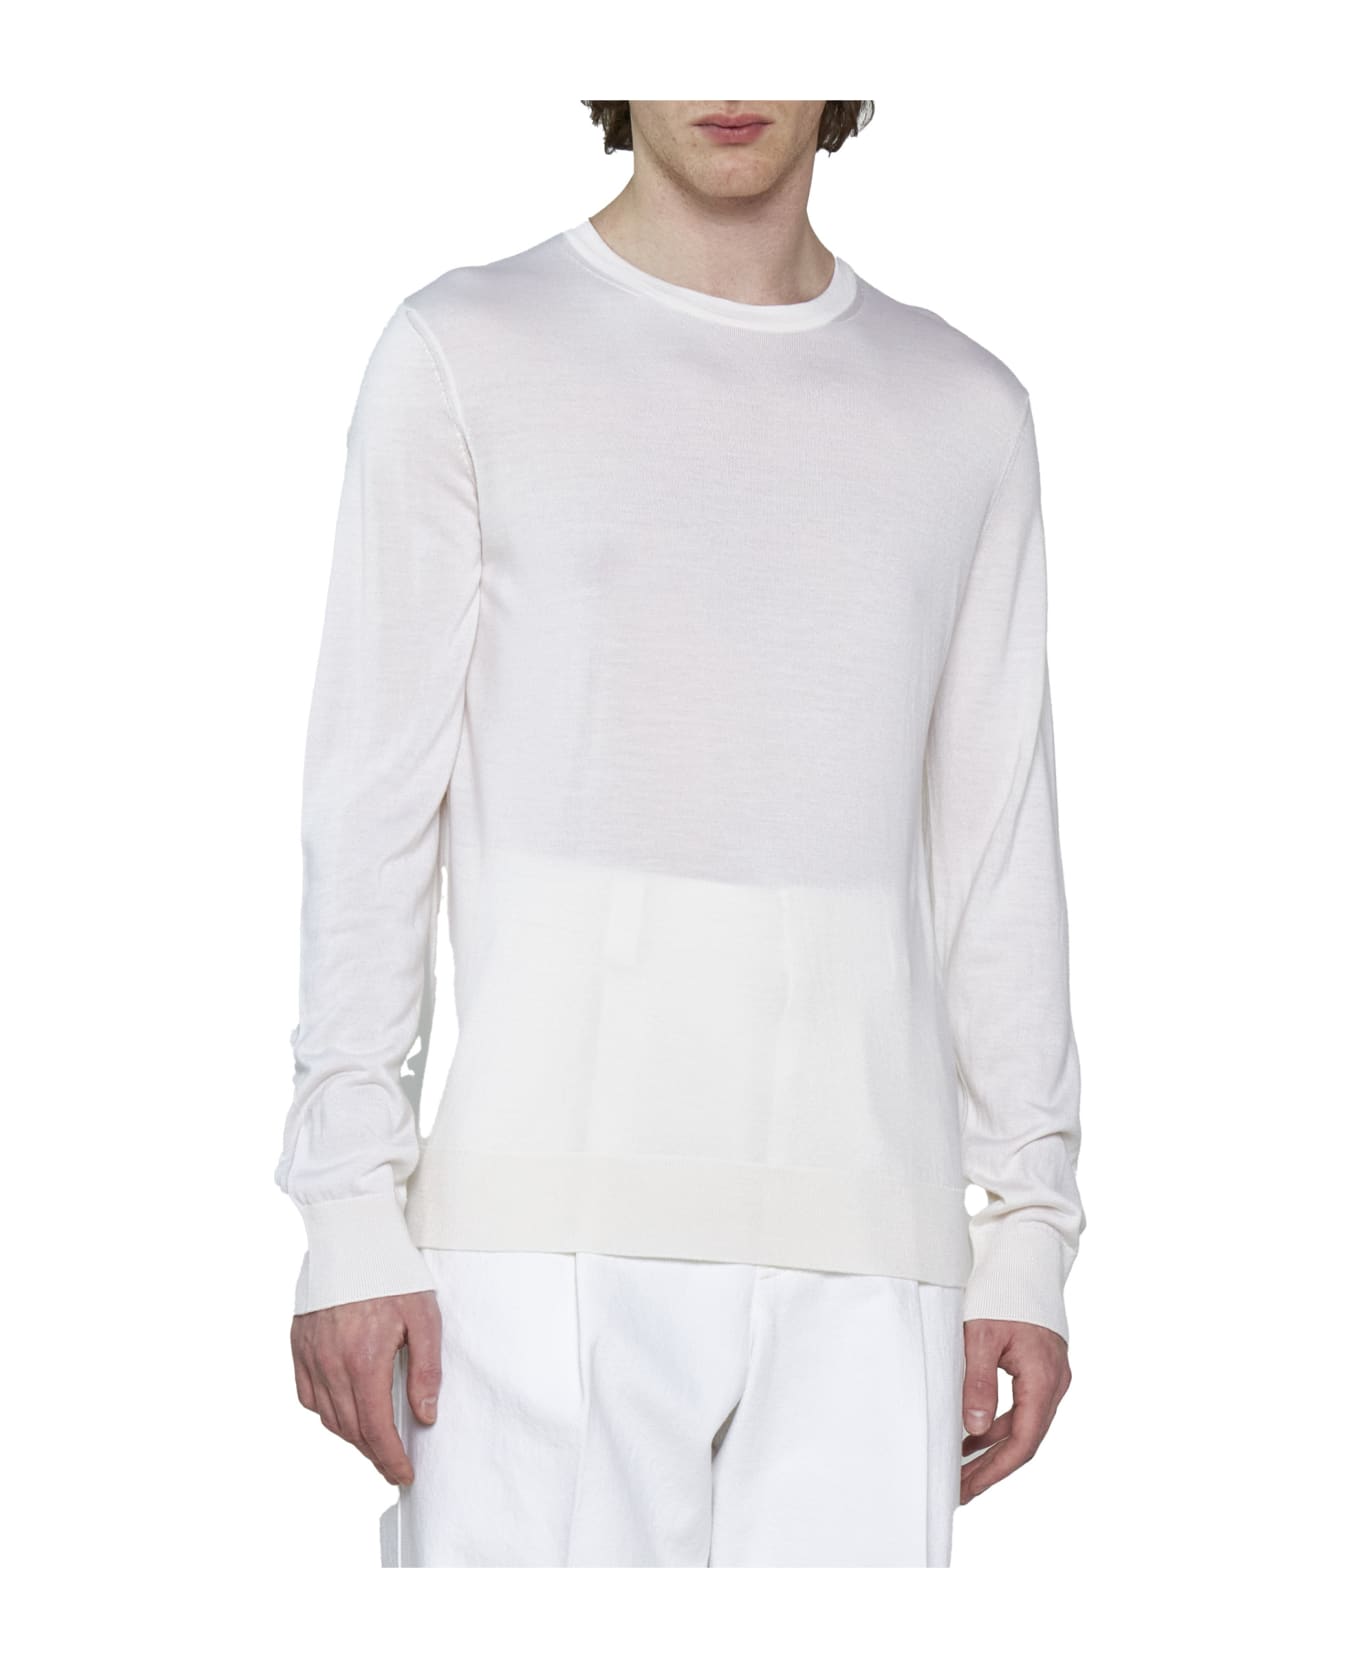 Ermenegildo Zegna Sweater - White